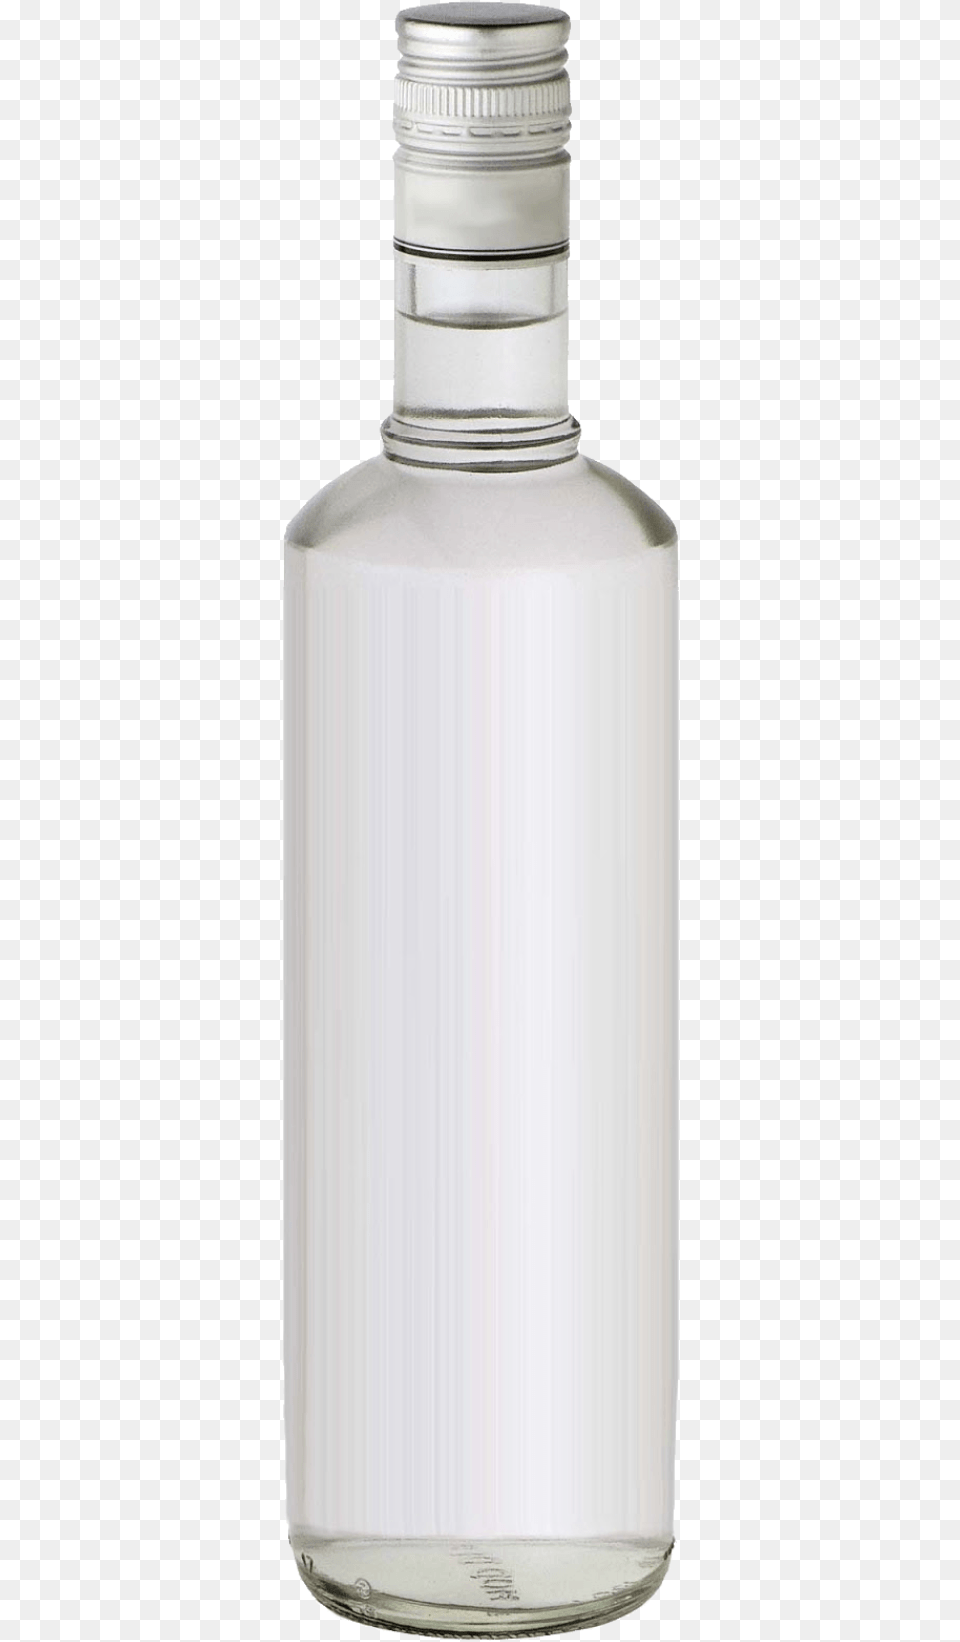 Vodka Bottle, Jar, Glass, Shaker Free Transparent Png